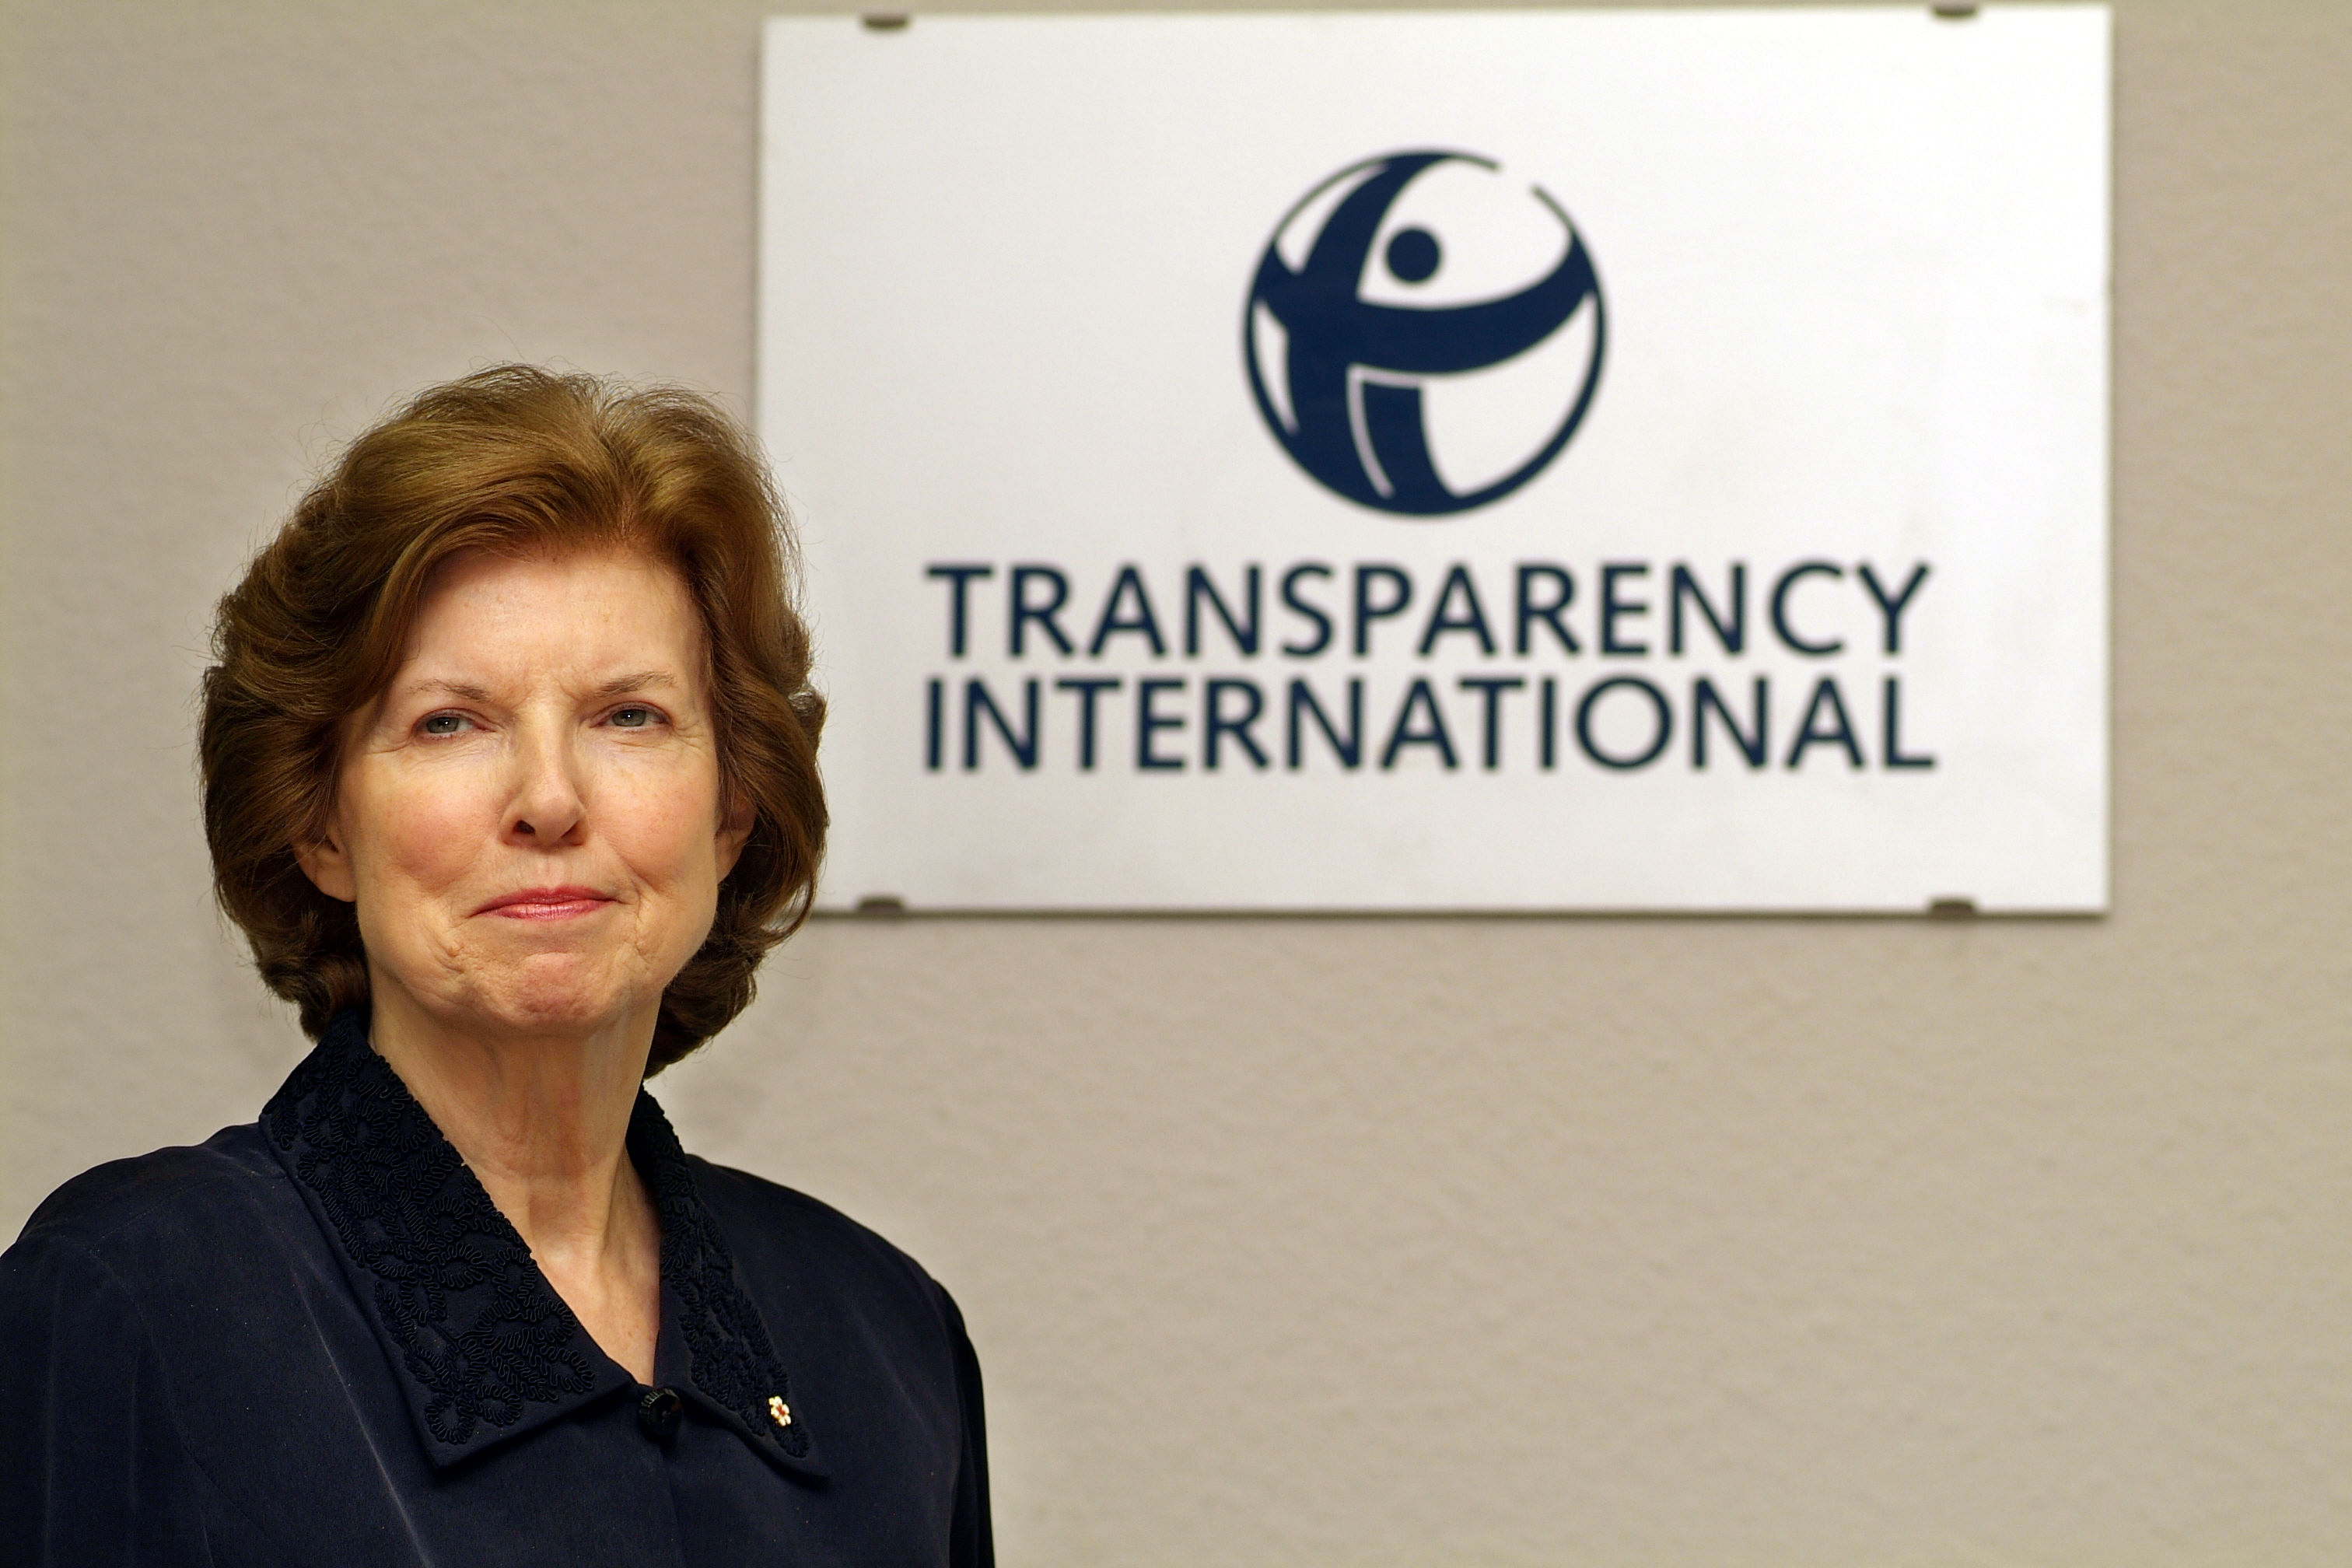 Εκθεση Transparency: Η διαφθορά συνέβαλε στην κρίση του ευρώ